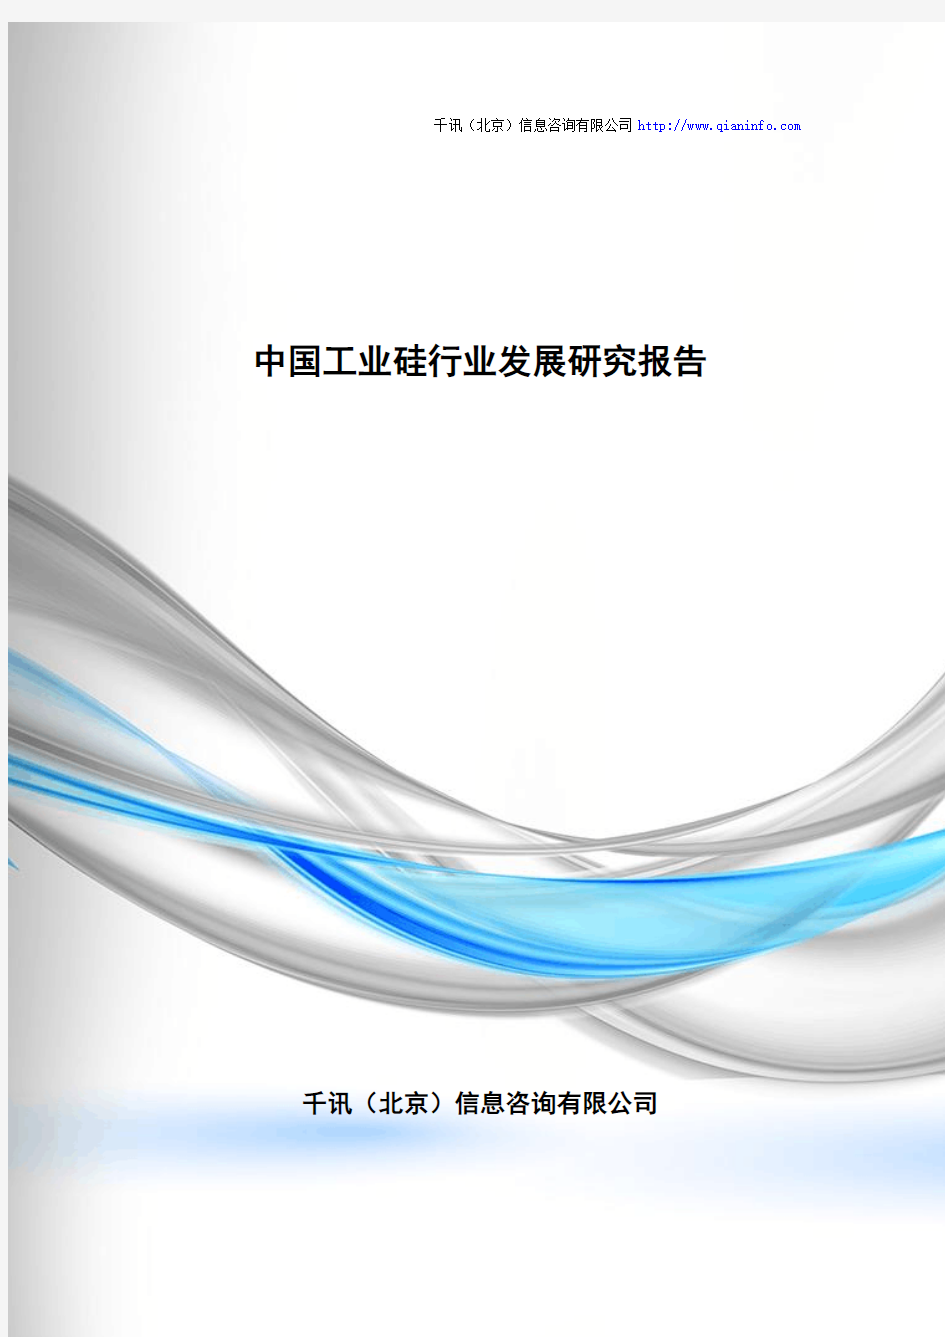 中国工业硅行业发展研究报告